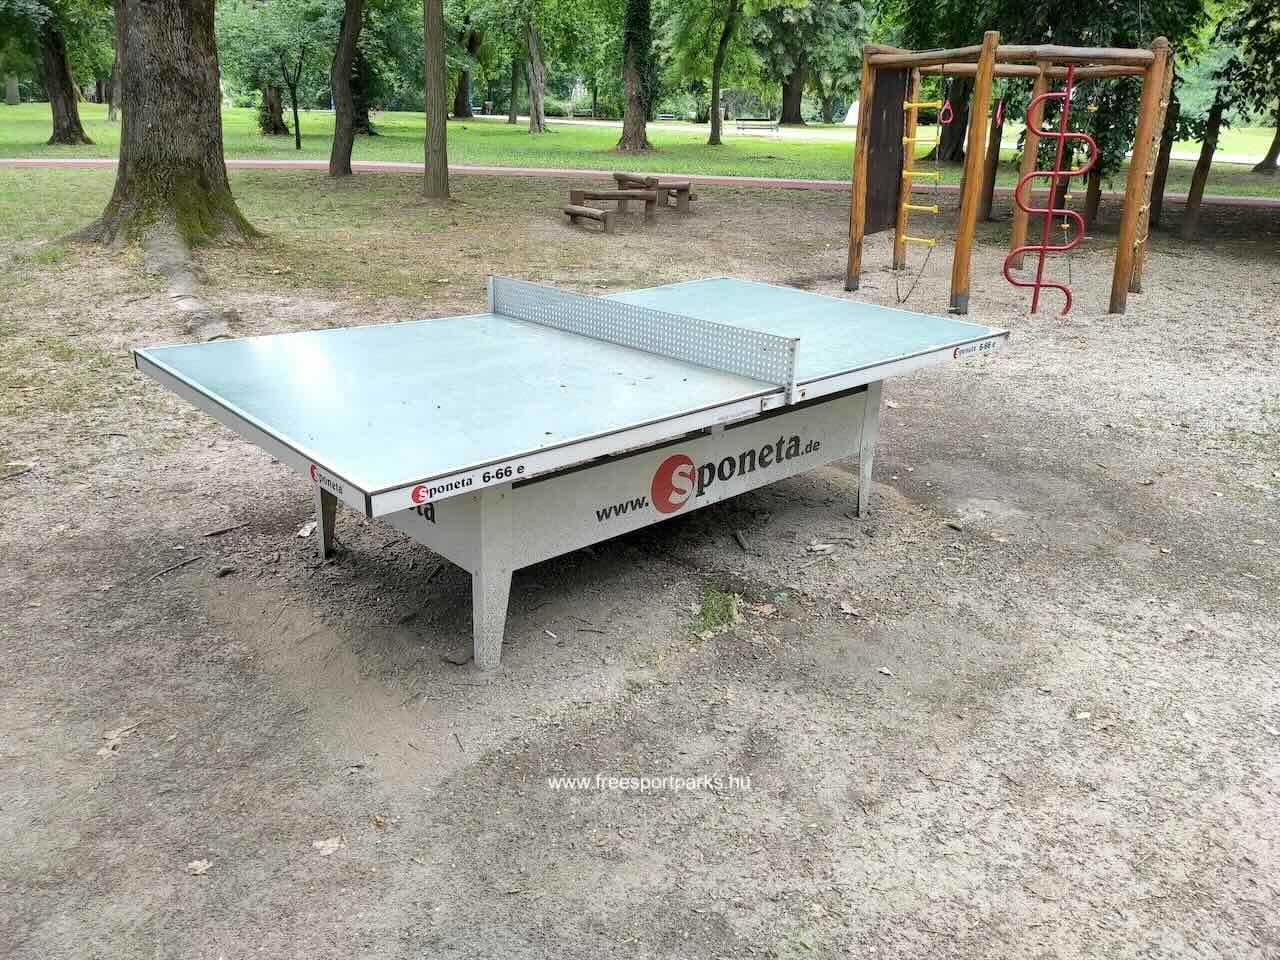 pingpong asztal földes talajon, Dombóvár Szigeterdő - Free Sport Parks Blog